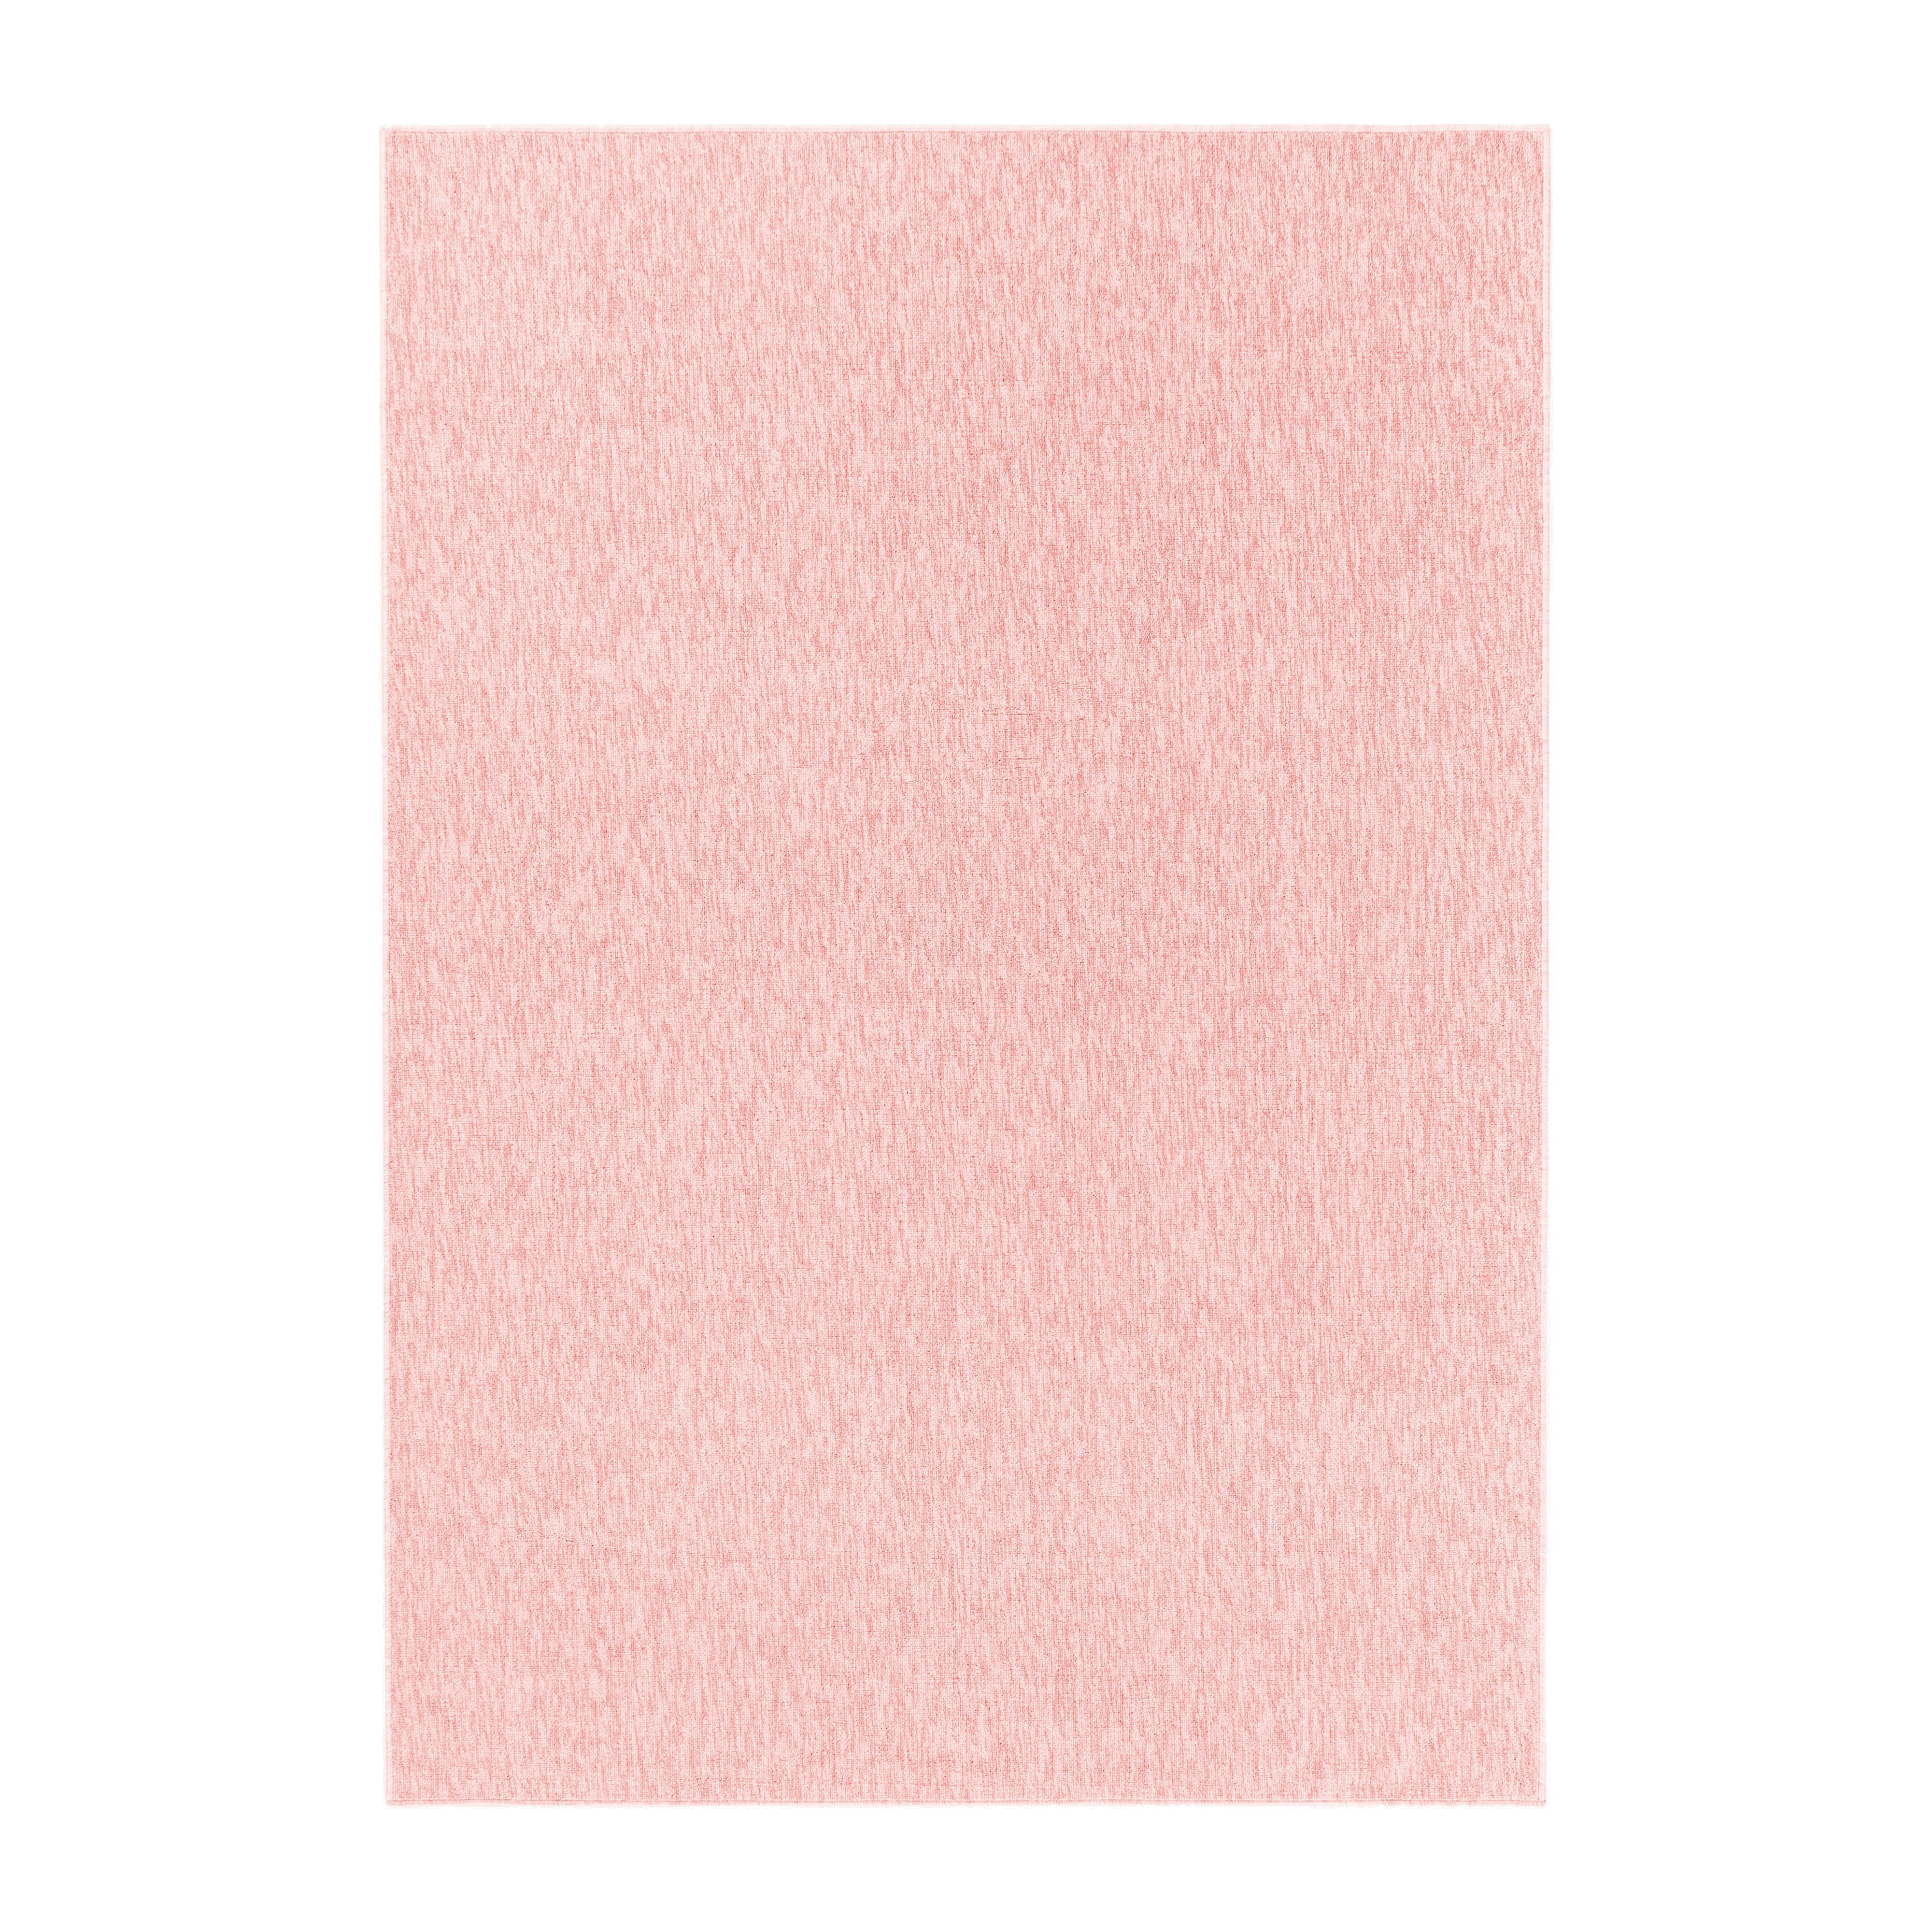 FLACHWEBETEPPICH 80/150 cm Nizza  - Rosa, Basics, Textil (80/150cm) - Novel